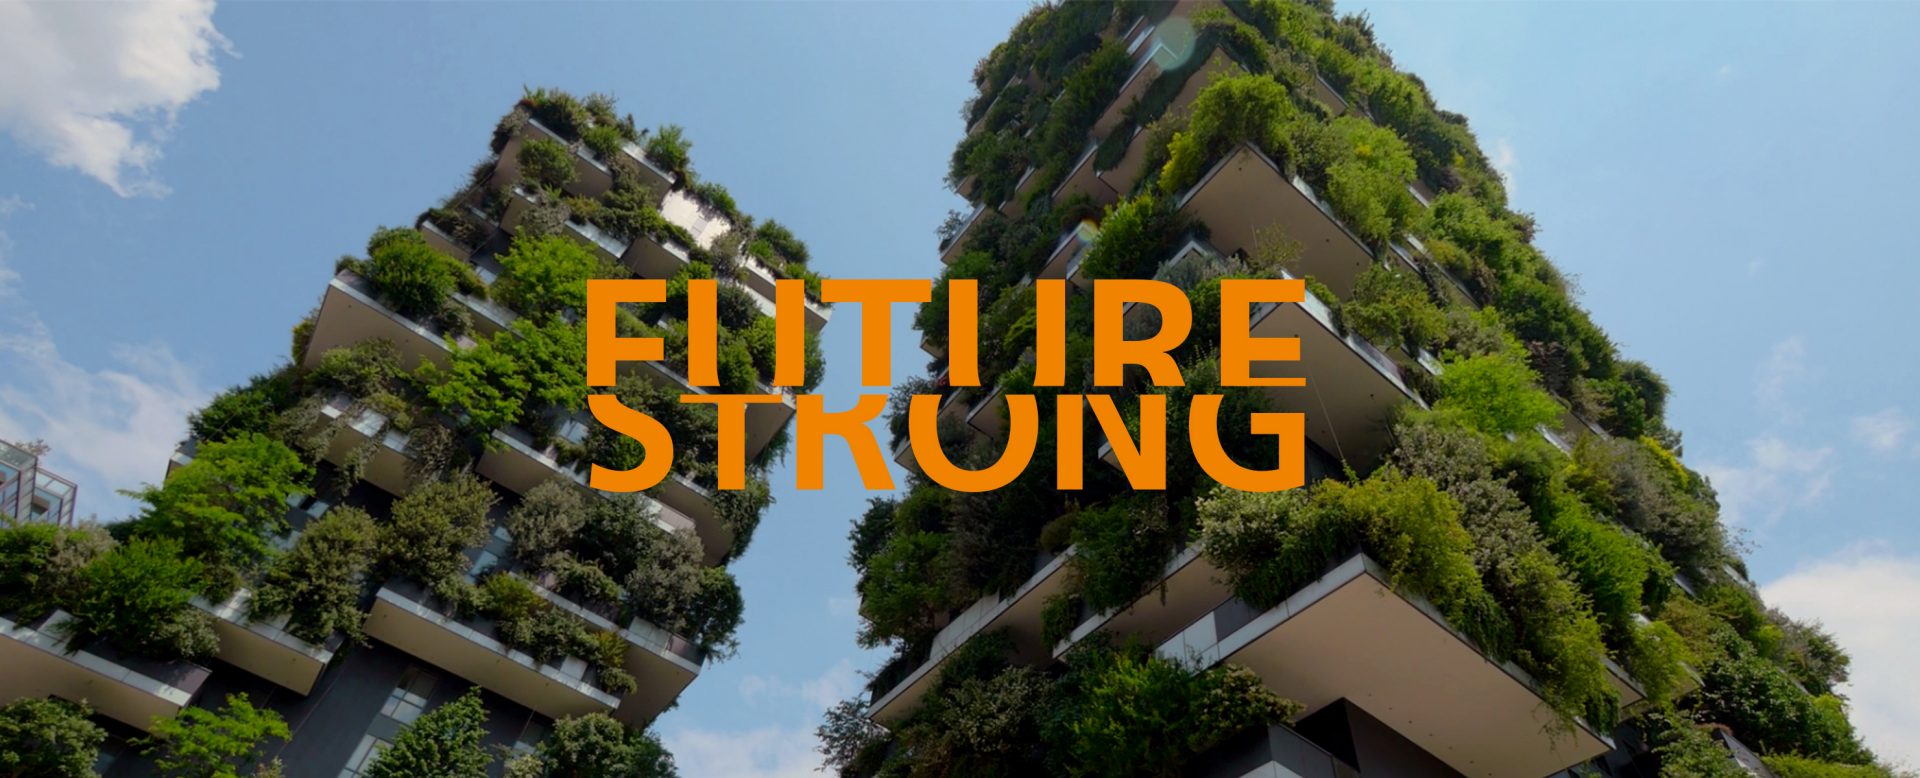 Pflanzen wachsen an Hochhauswänden: "Lebende Fassaden" sind am DZ BANK Standort Singapur ein alltäglicher Anblick.